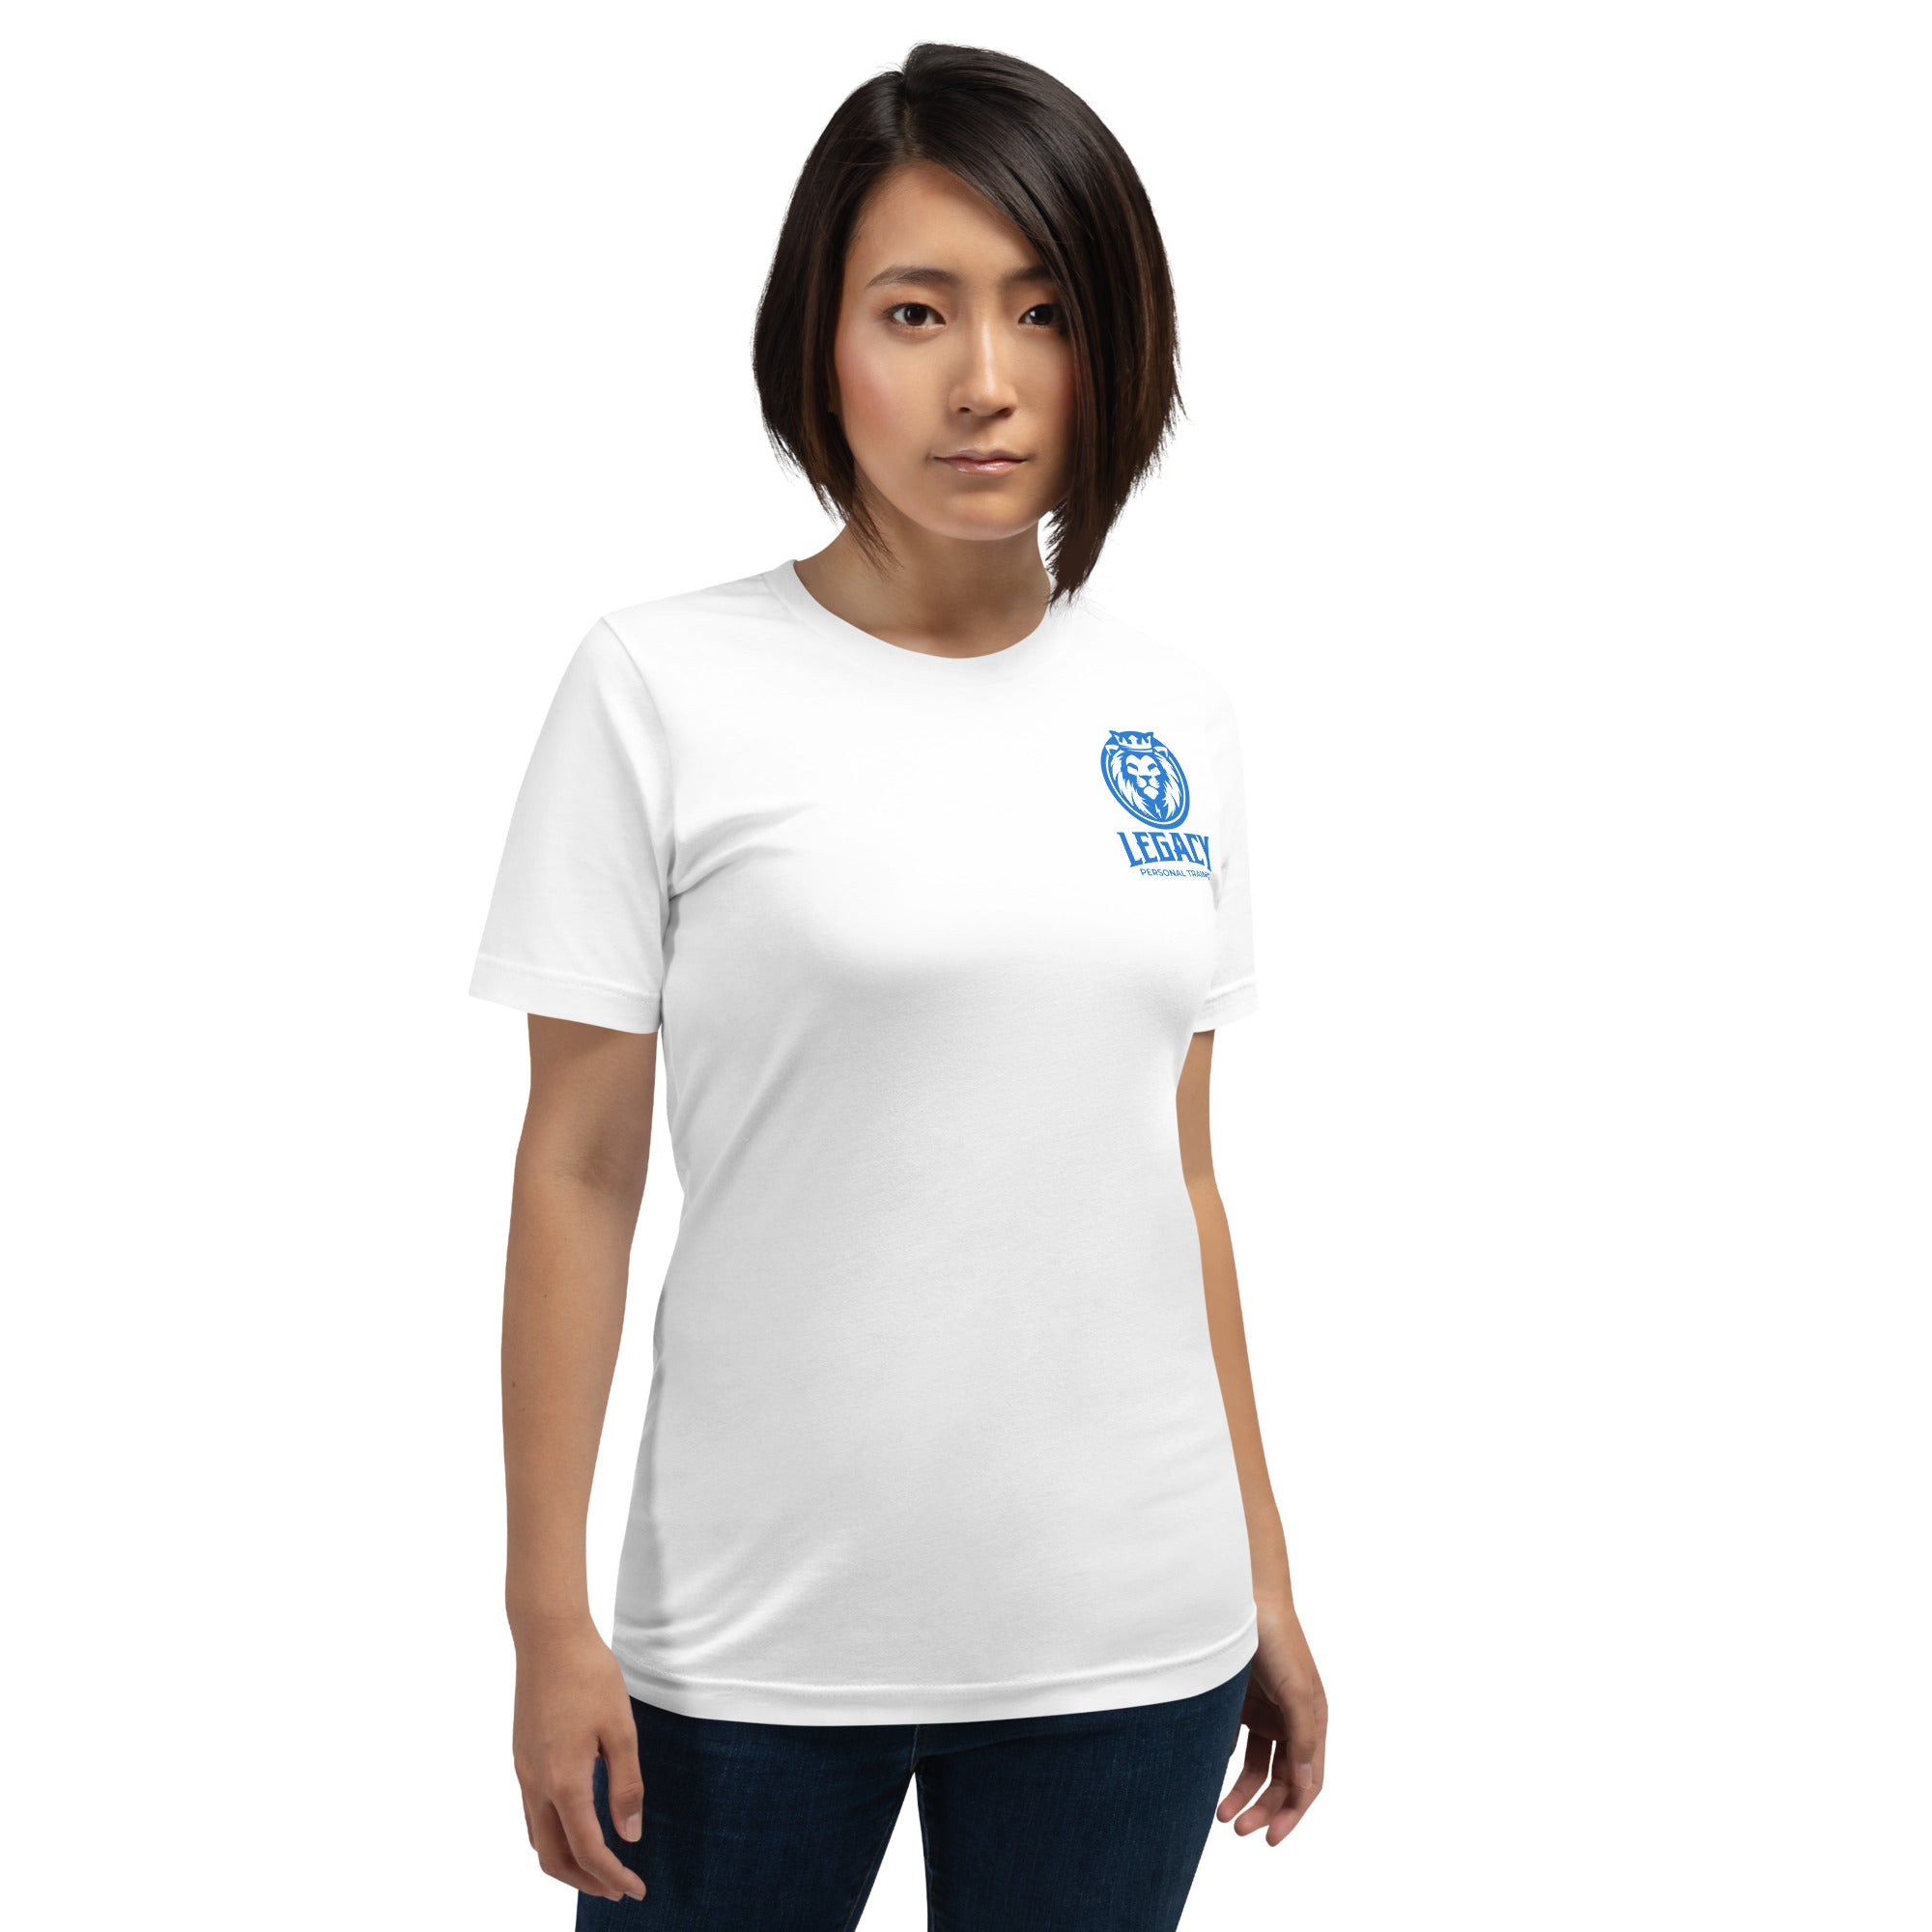 Bar Bendin' White Short-Sleeve Unisex T-Shirt